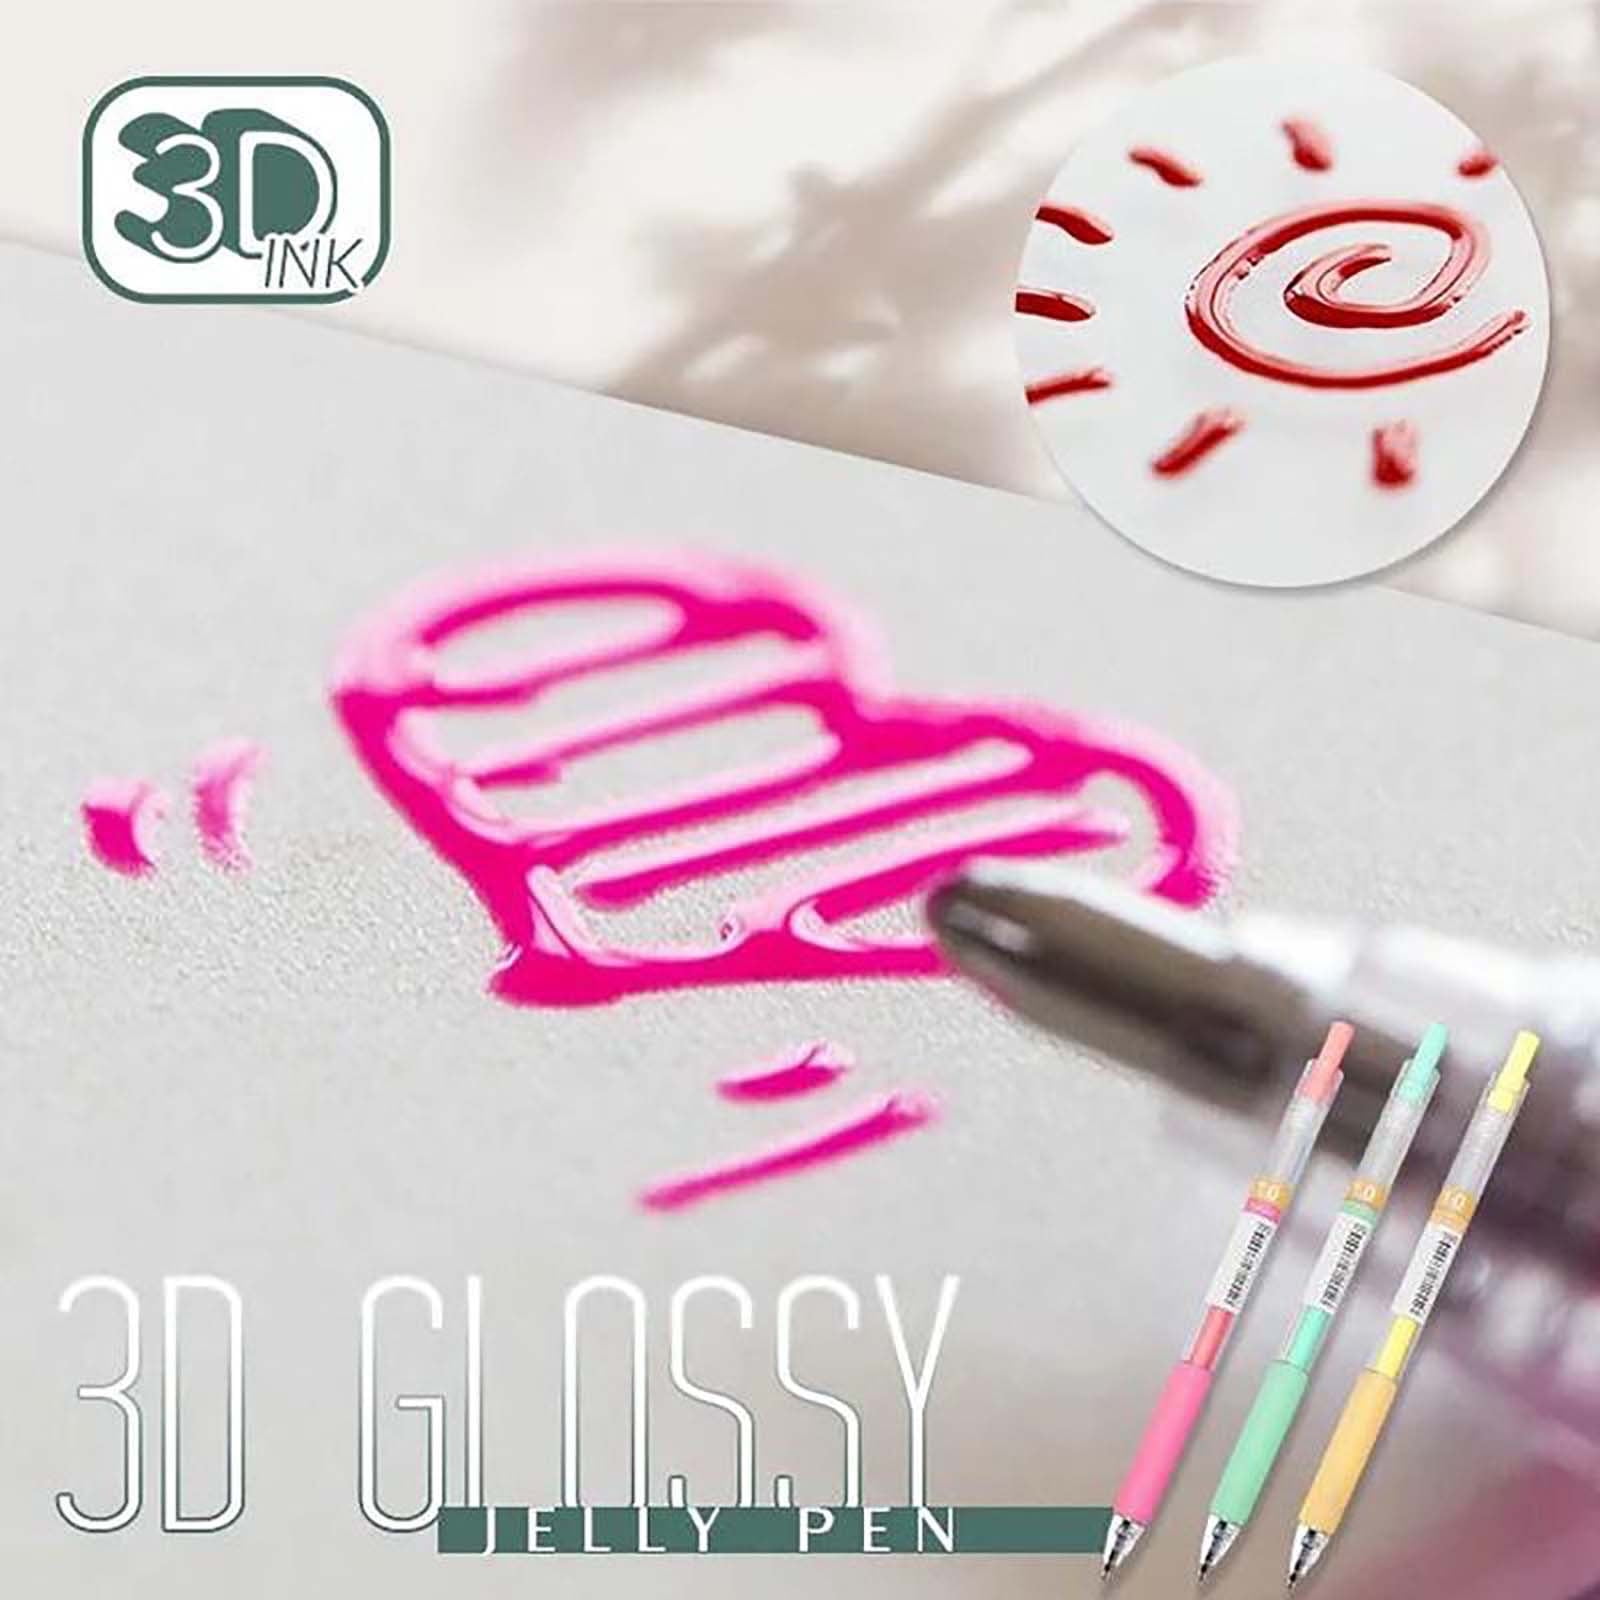 6pcs 3d Jelly Pens Set, Doodle Juice Paint Journal Pens, 12 Colors